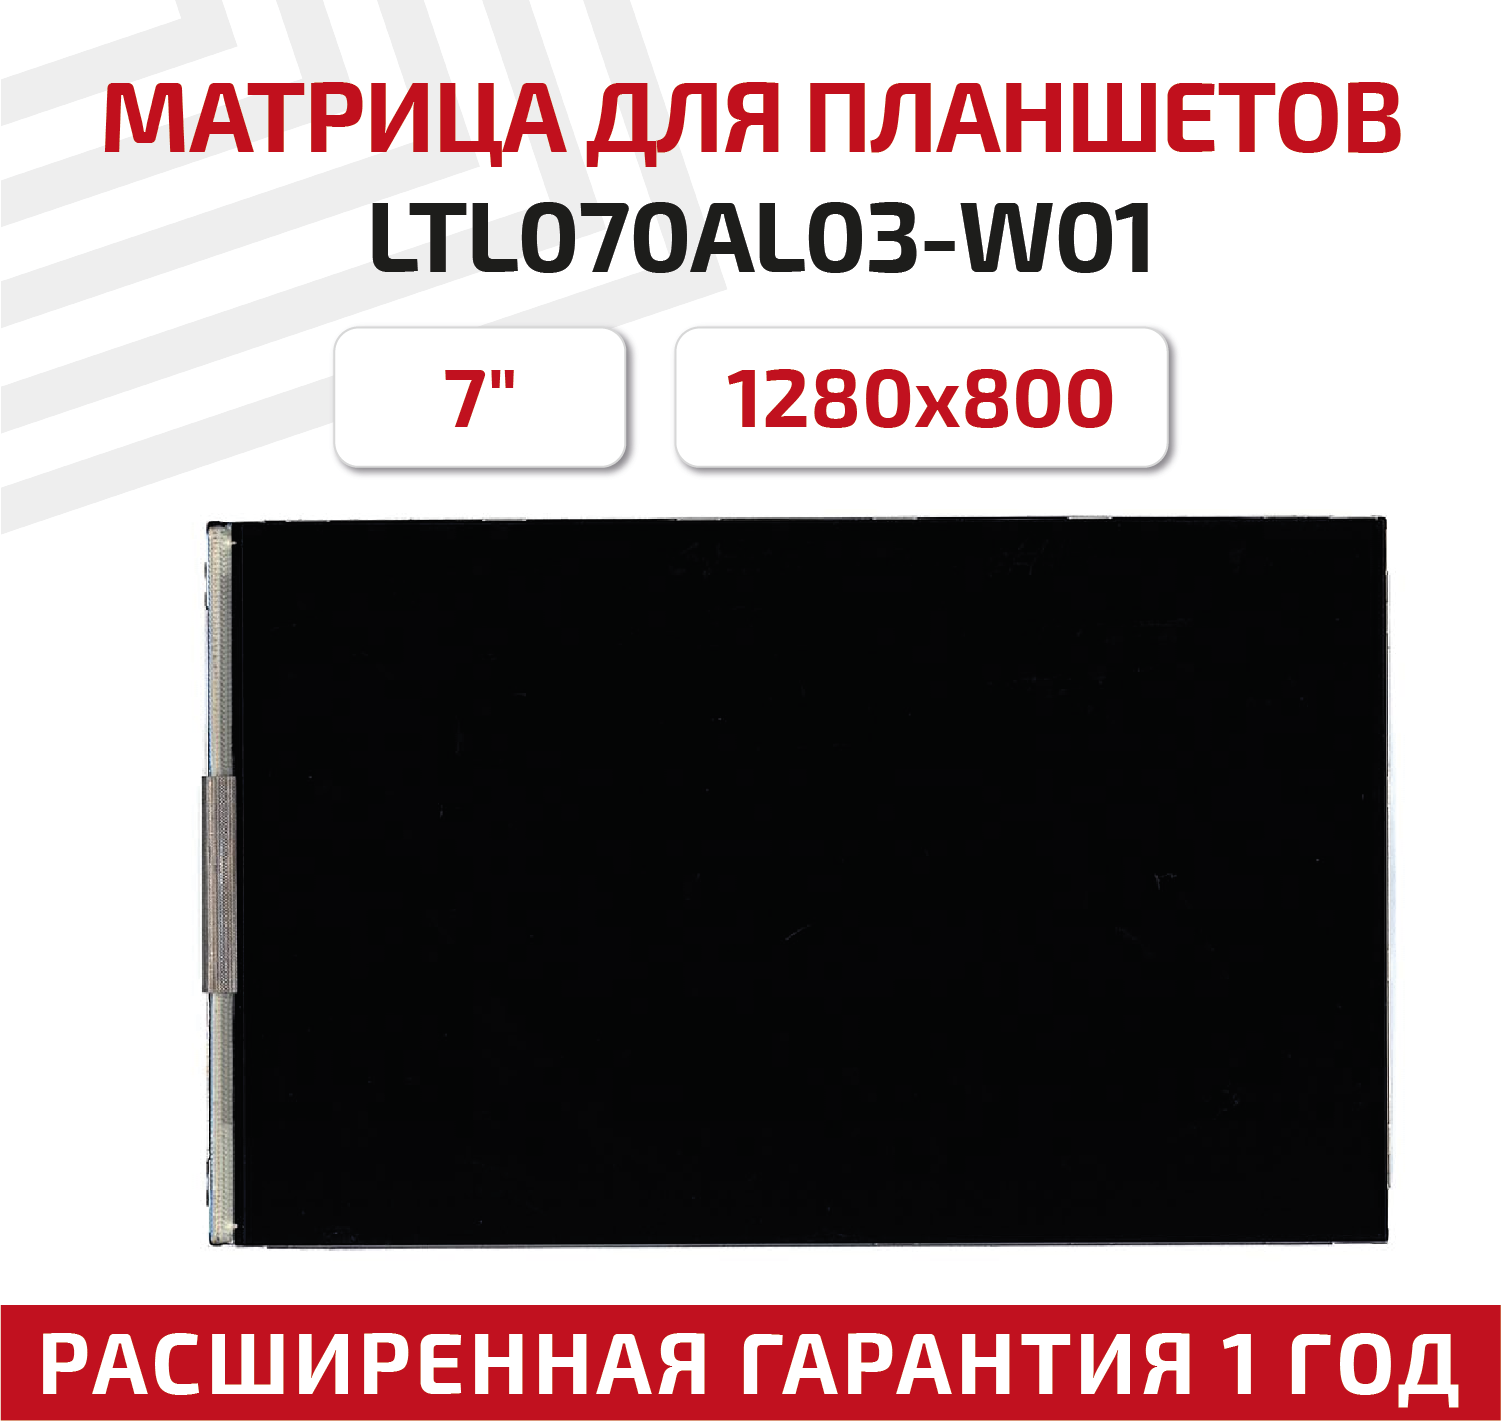 Матрица для планшета LTL070AL03-W01 7